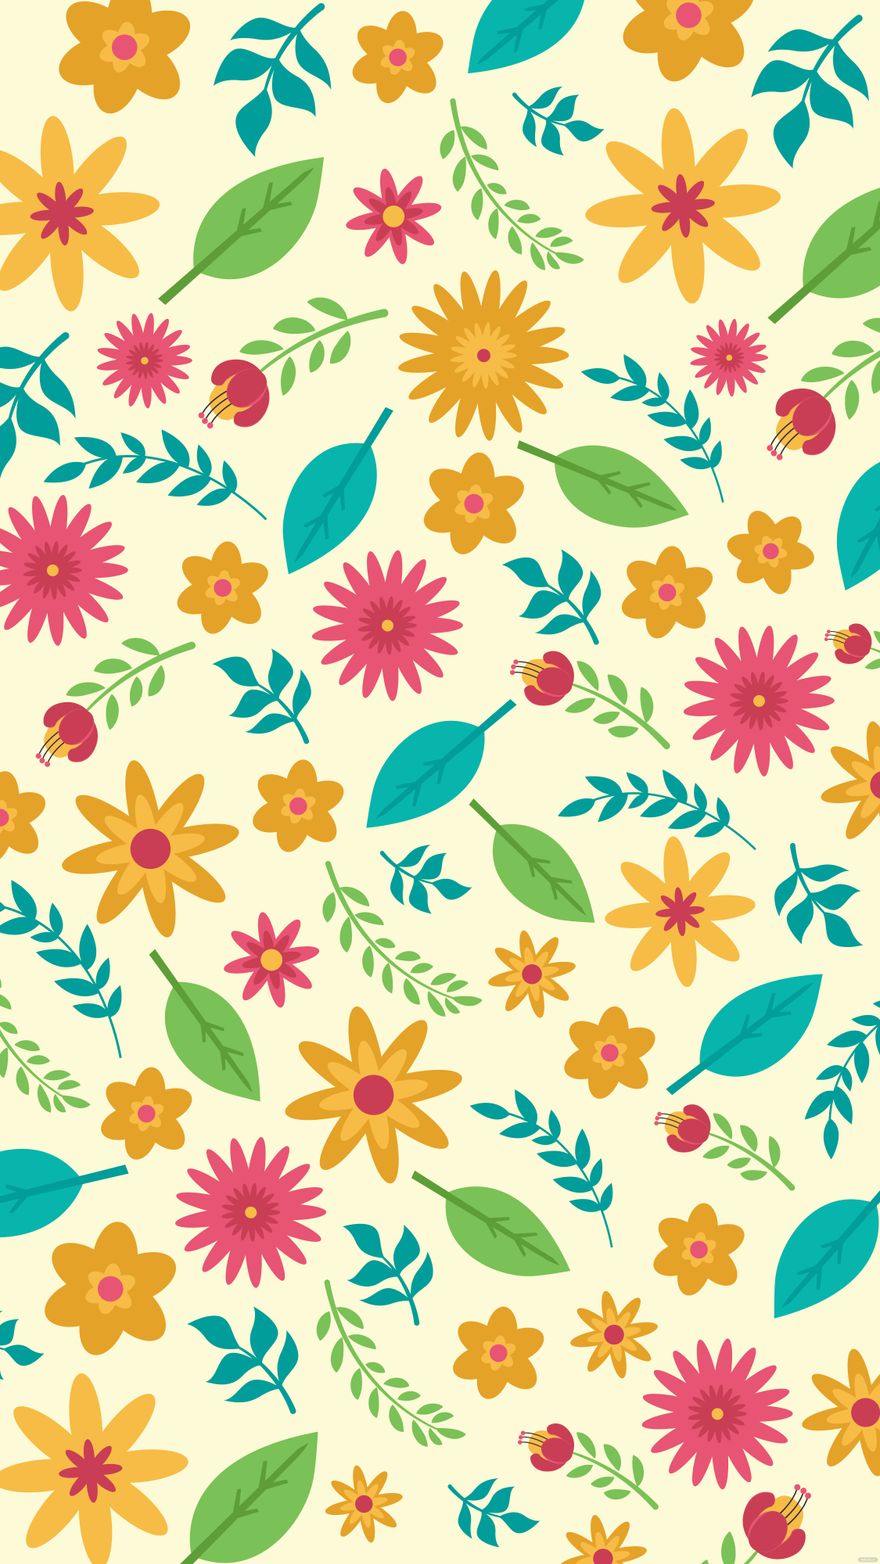 Summer Floral Pattern Background in Illustrator, EPS, SVG, JPG